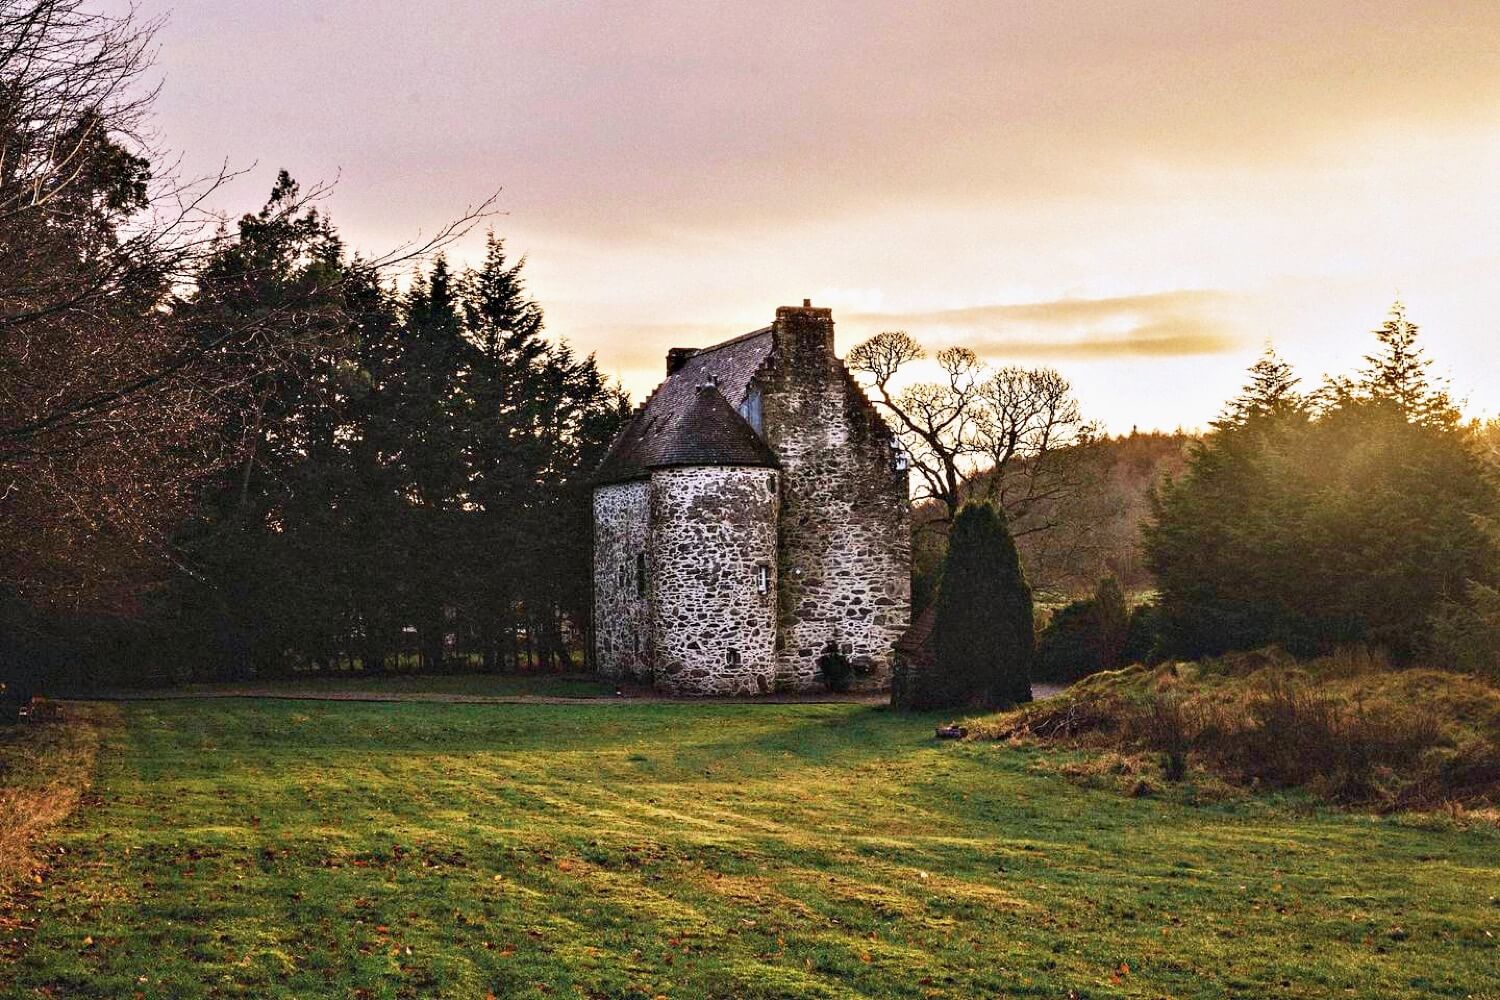 Kilmartin Castle